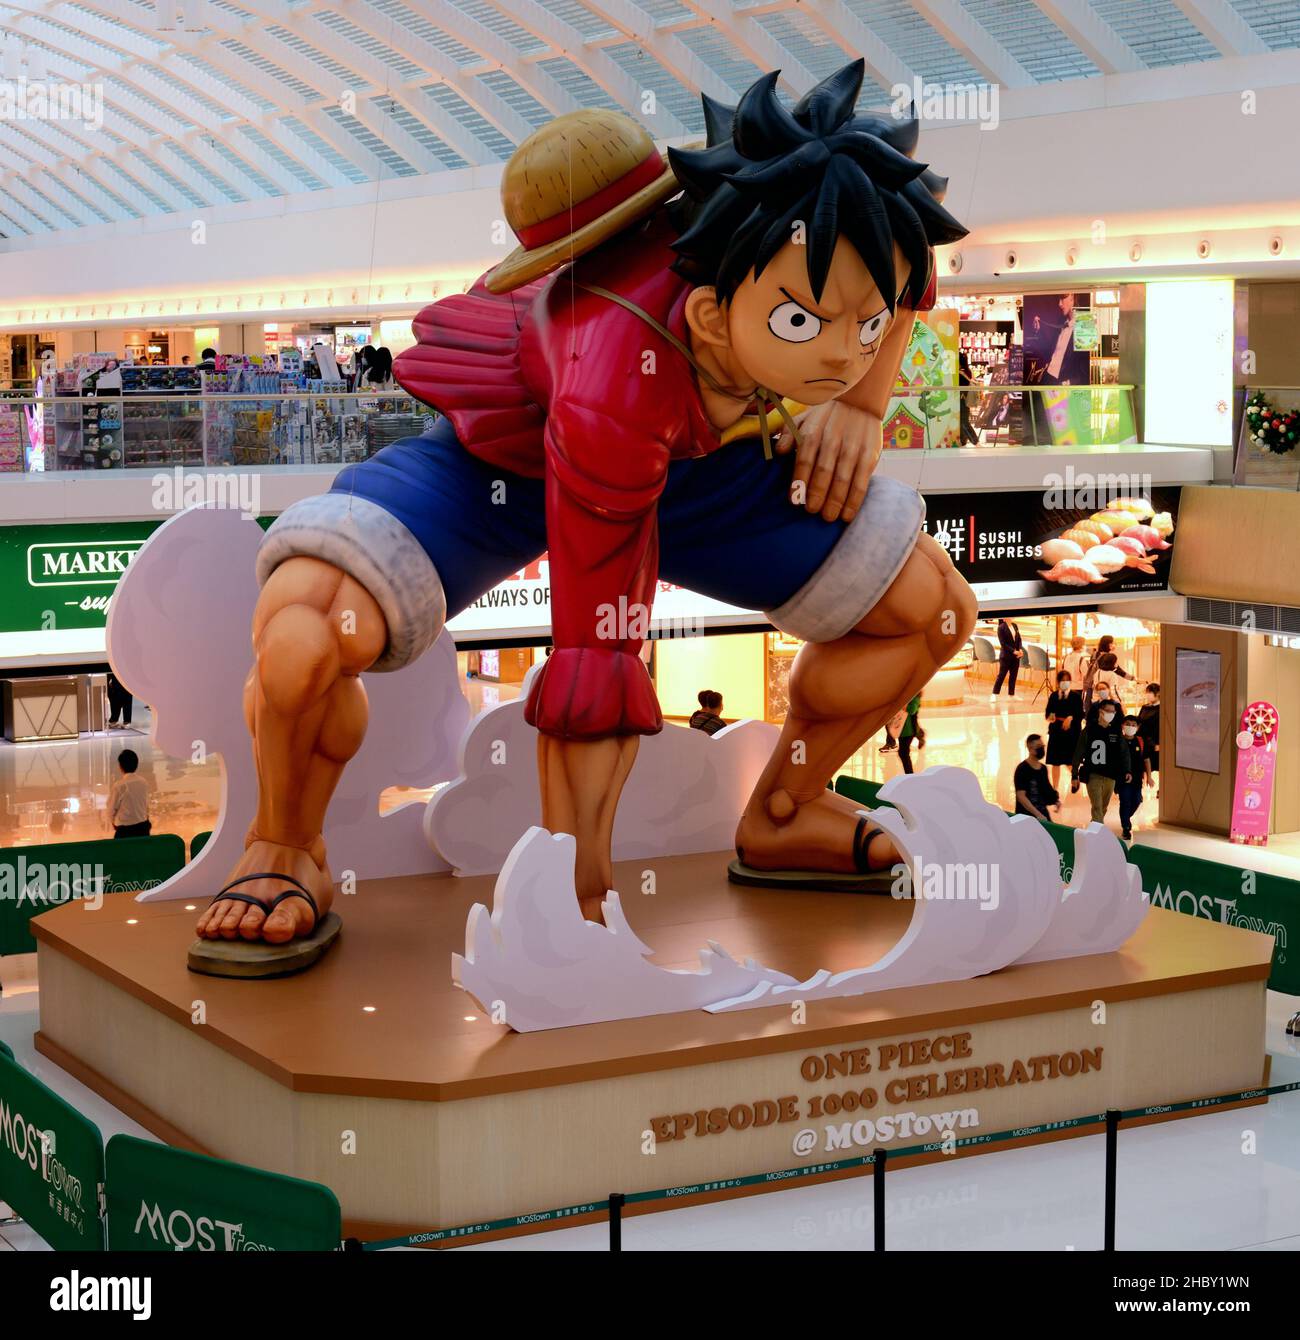 En el podio dentro de una galería comercial se muestra una figura inflable de Luffy, el protagonista del manga japonés One Piece Foto de stock